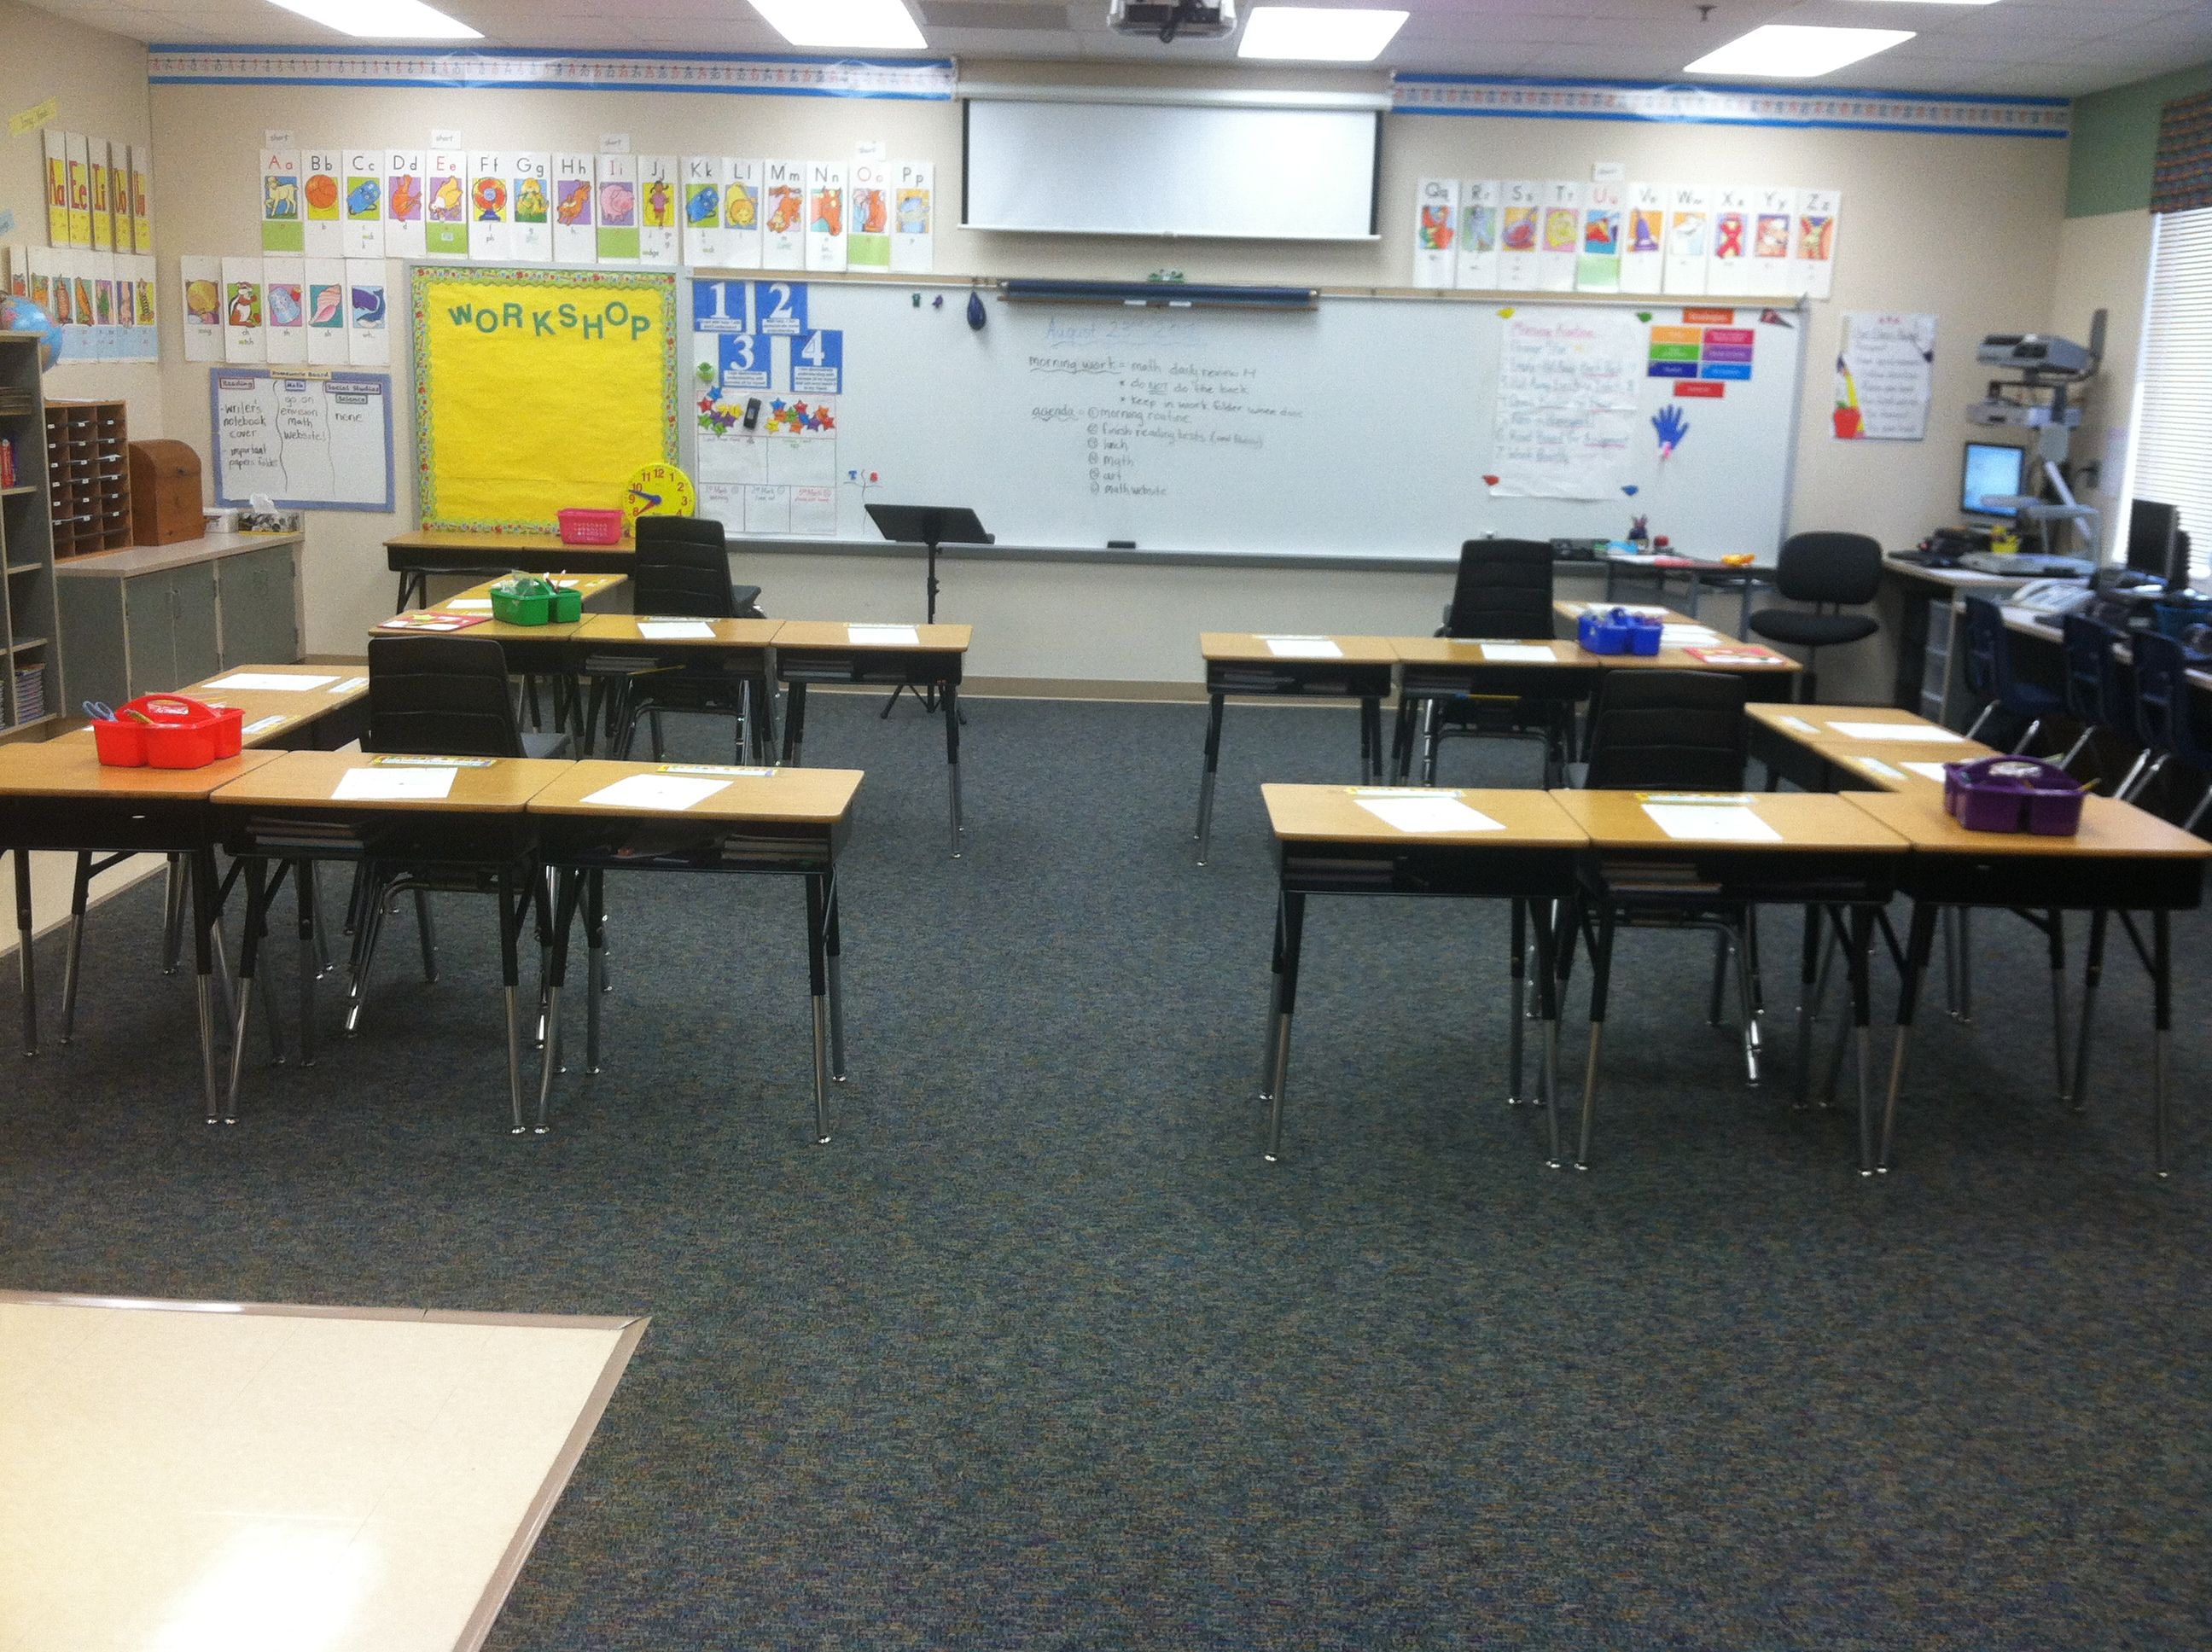 Desk arrangement | Classroom | Pinterest | Desks, Classroom ...